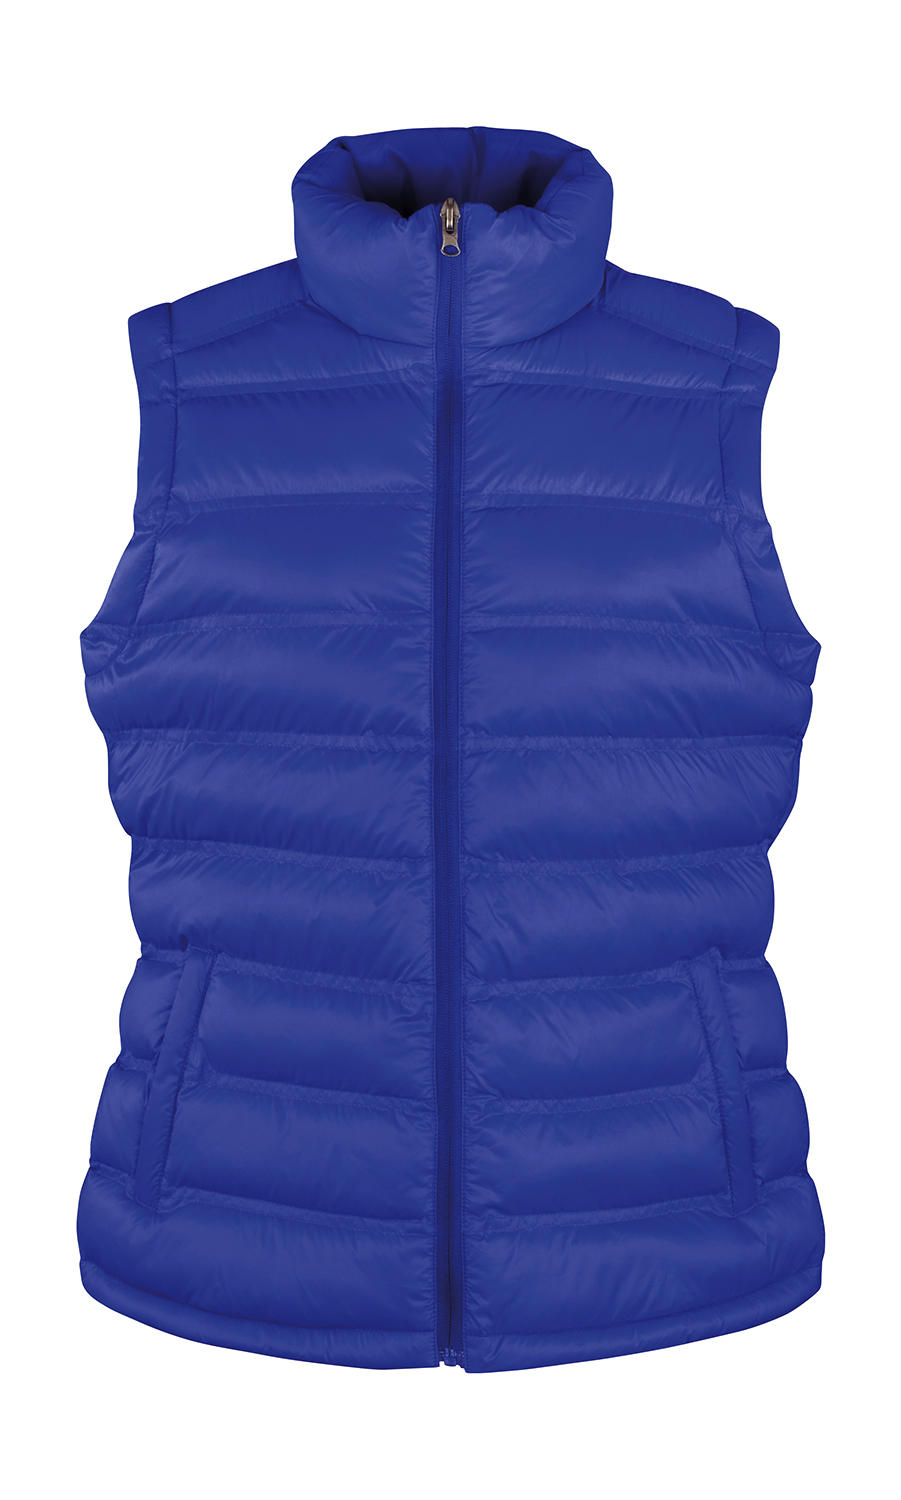 Dámská prošívaná vesta Result Ice Bird - modrá, XL